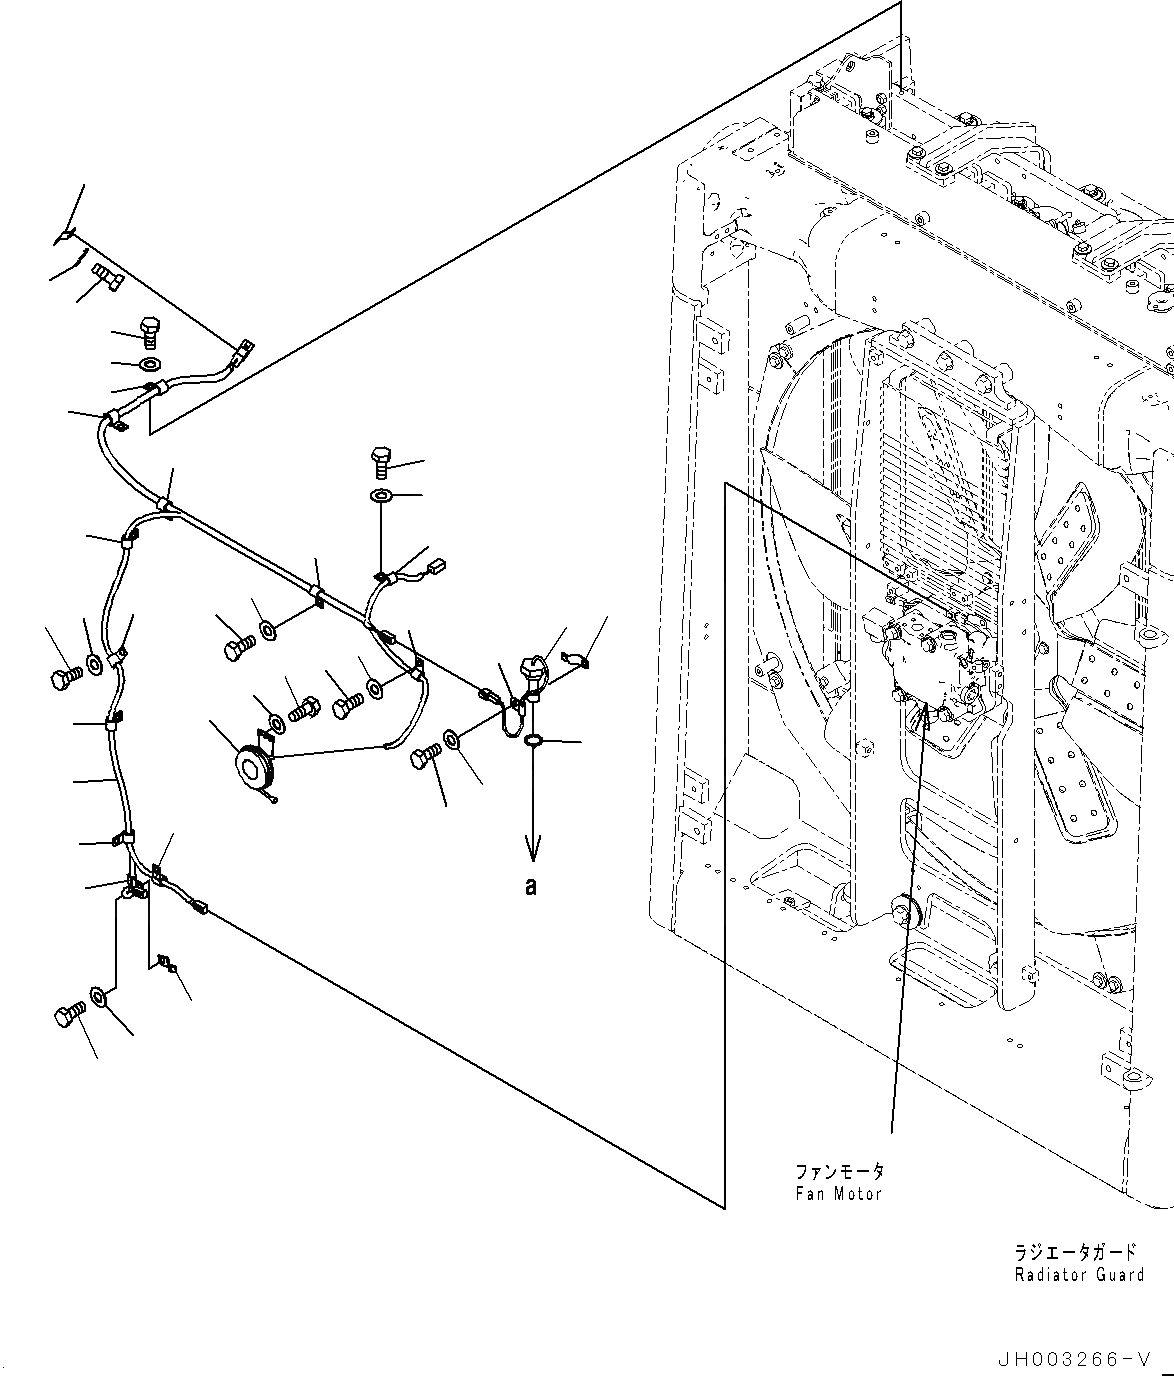 Схема запчастей Komatsu D375A-6 - ЗАЩИТА РАДИАТОРА, ПРОВОДКА (№-) ЗАЩИТА РАДИАТОРА, WIRE Э/ПРОВОДКА С NUMBERING